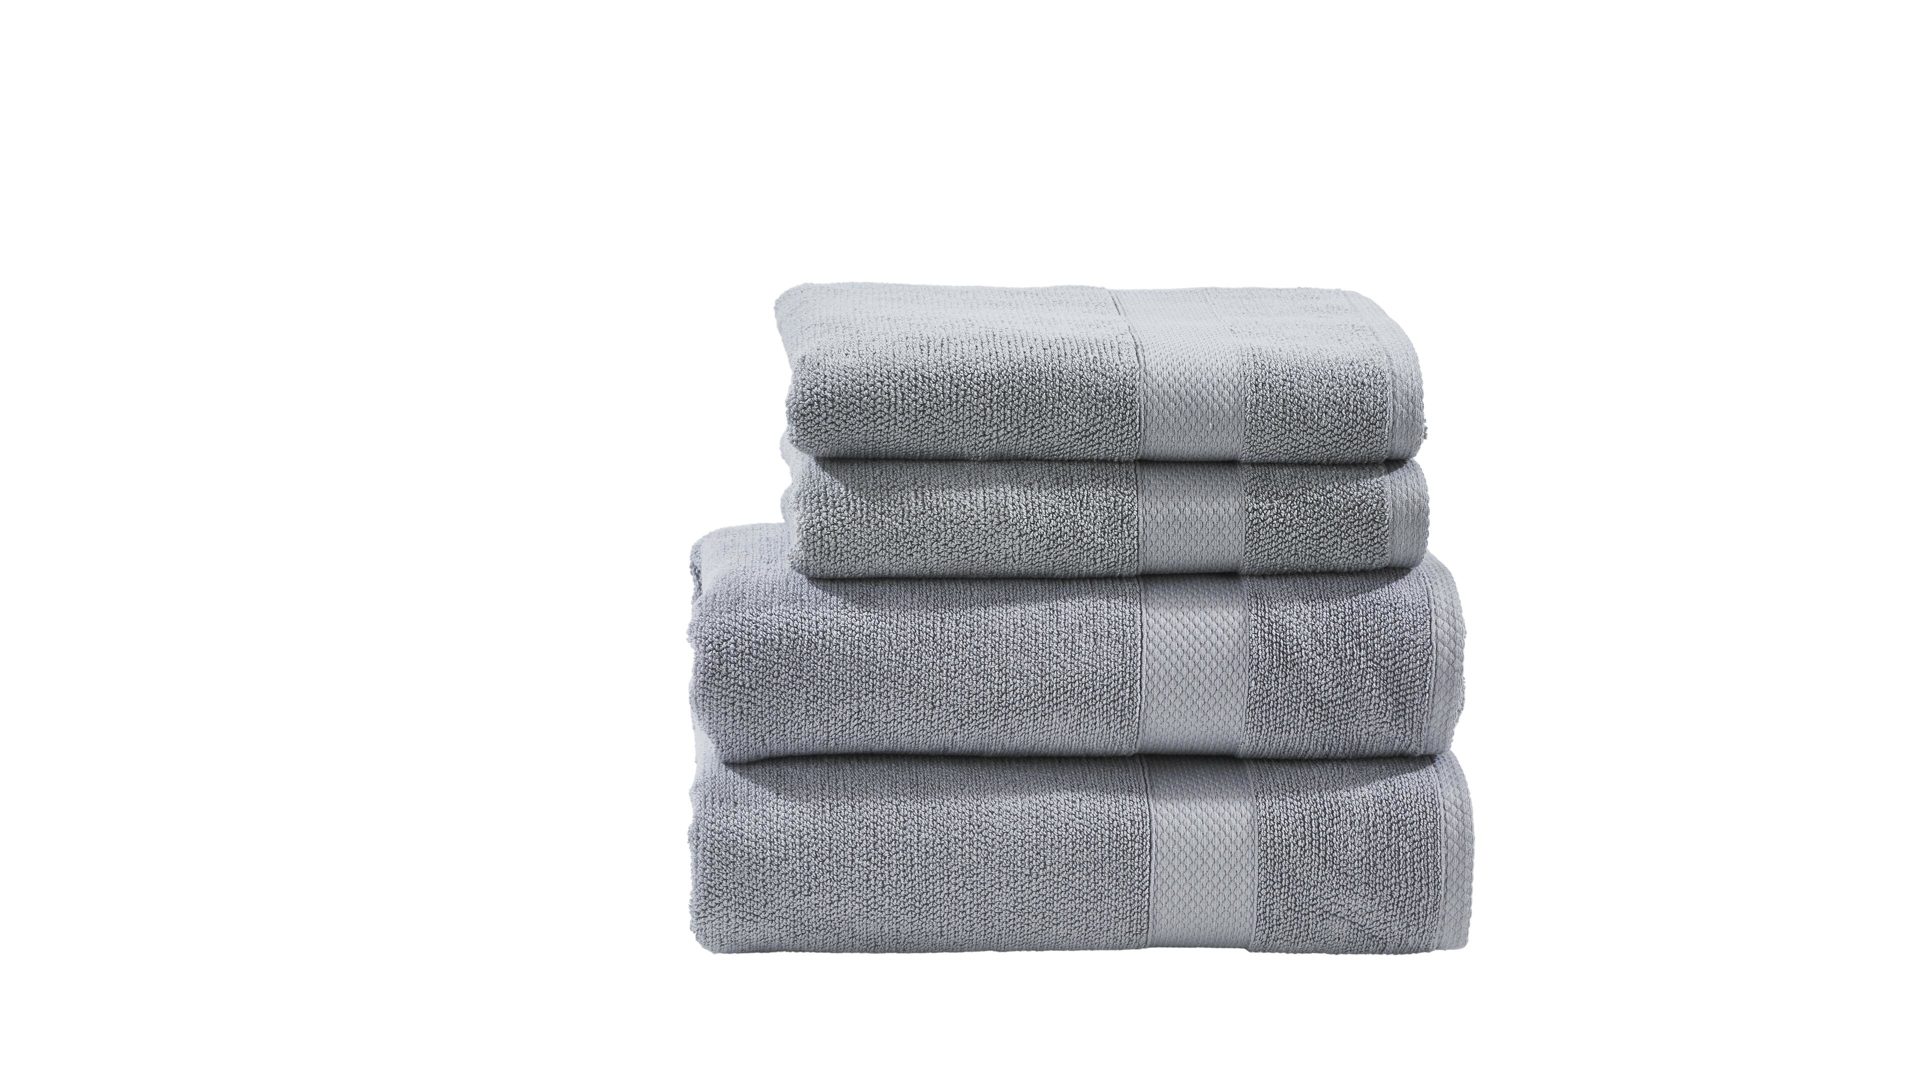 Handtuch-Set Done® by karabel home company aus Stoff in Hellgrau DONE® Handtuch-Set Deluxe silberfarbene Baumwolle – vierteilig